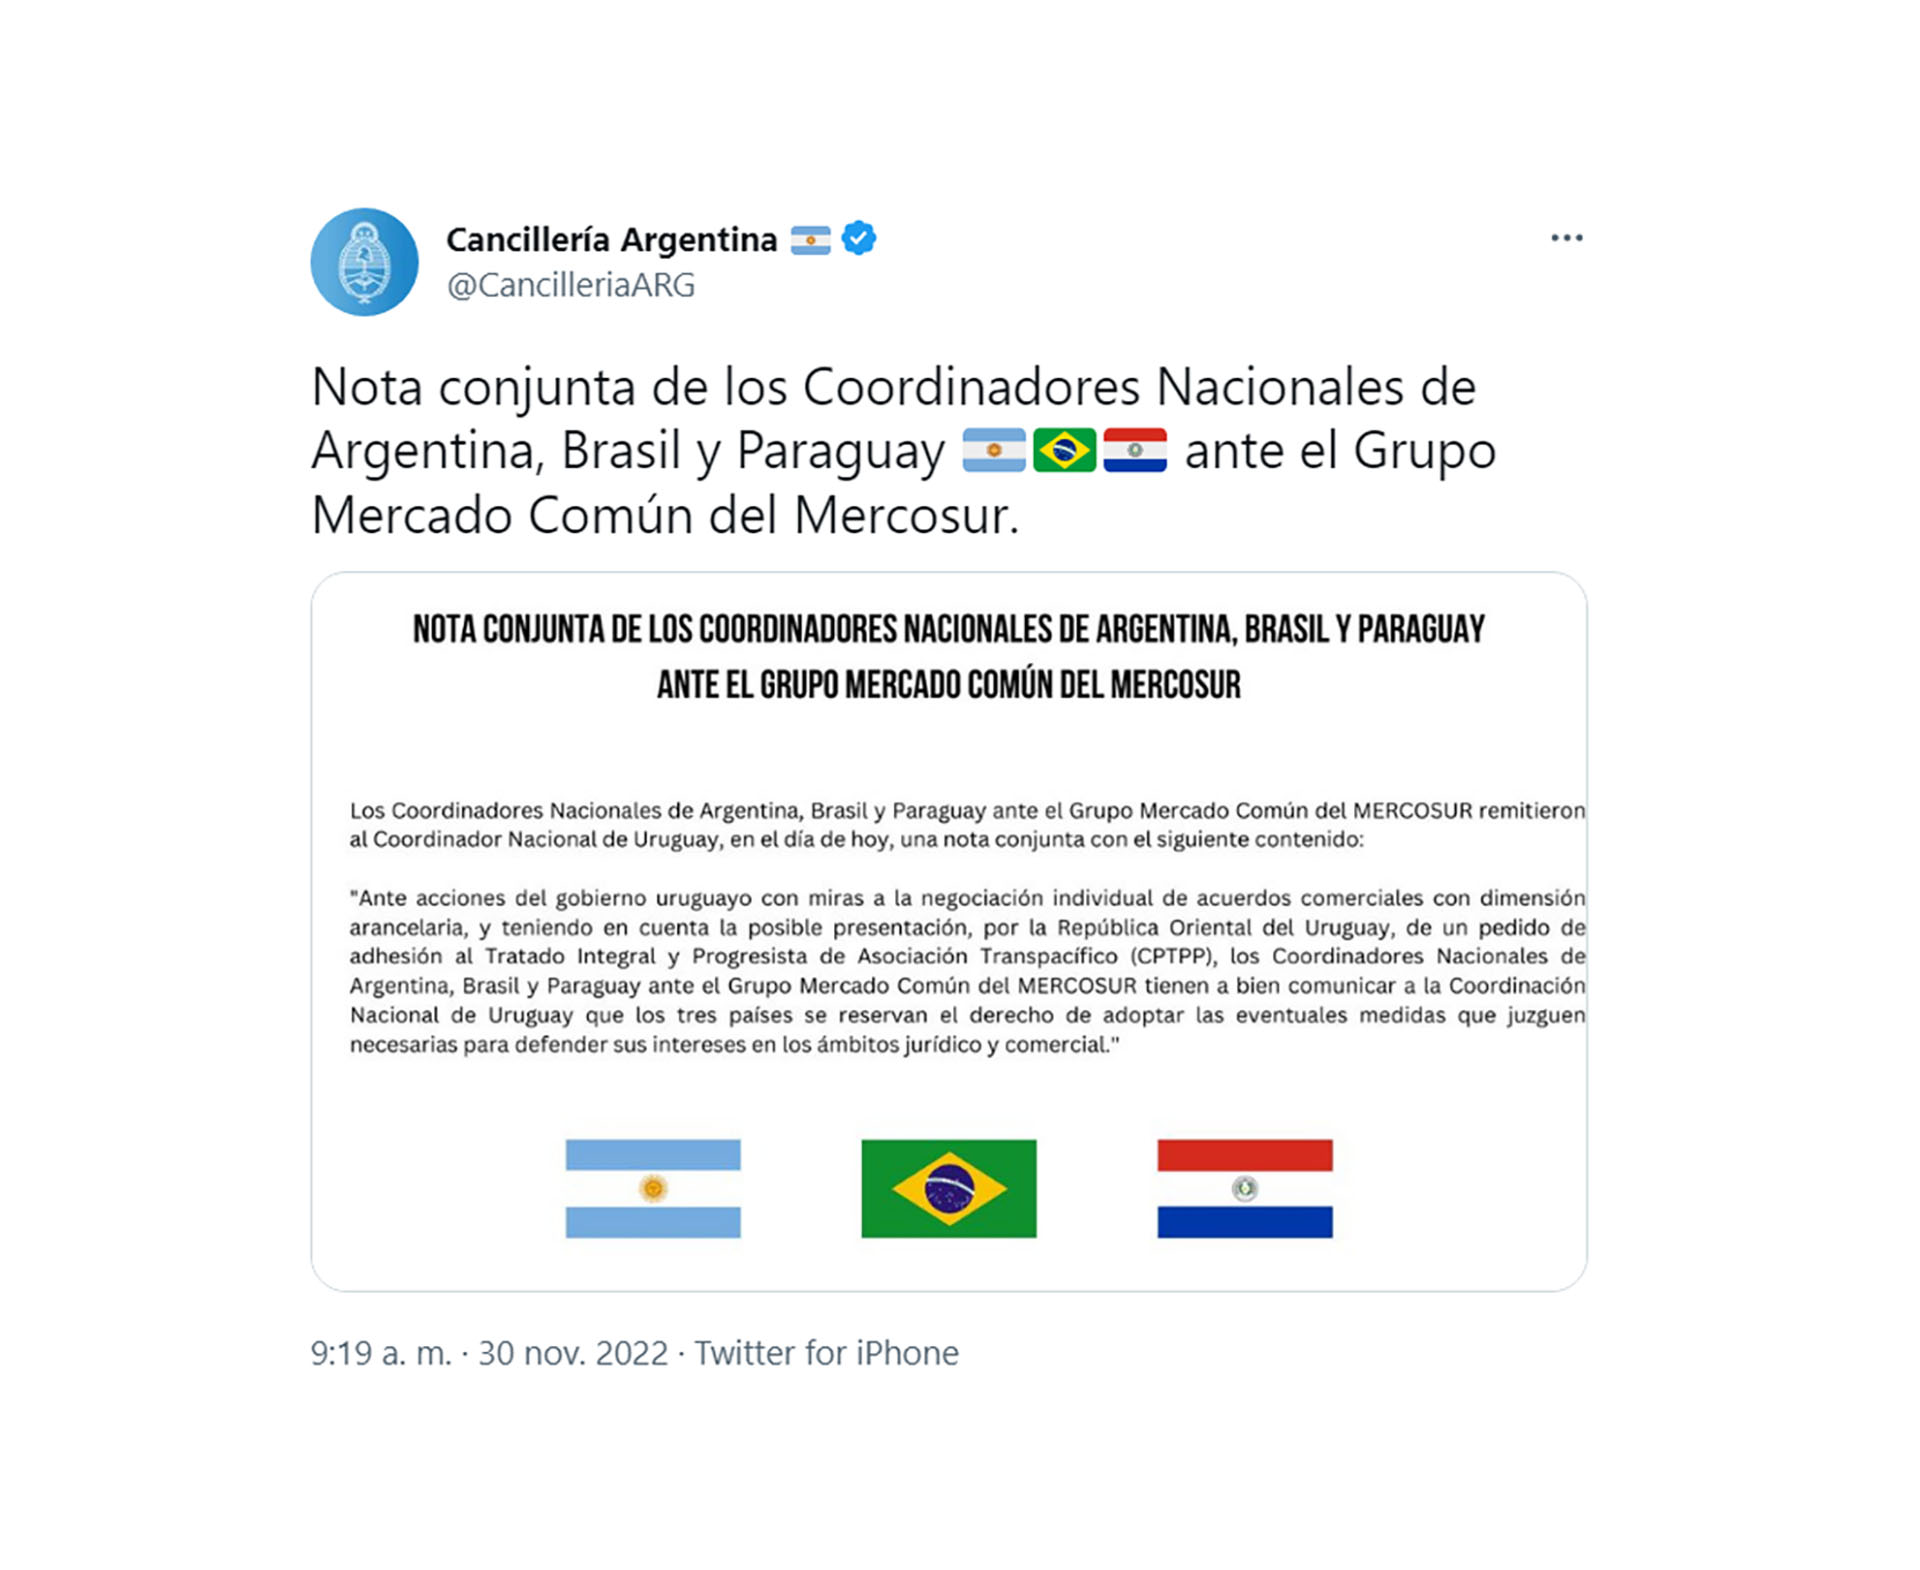 Facsímil del tuit posteado en conjunto por las cancillerías de Argentina, Brasil y Paraguay advirtiendo a Uruguay que tomarán represalias jurídicas si insiste con negociar acuerdos de Libre Comercio al margen del Mercosur